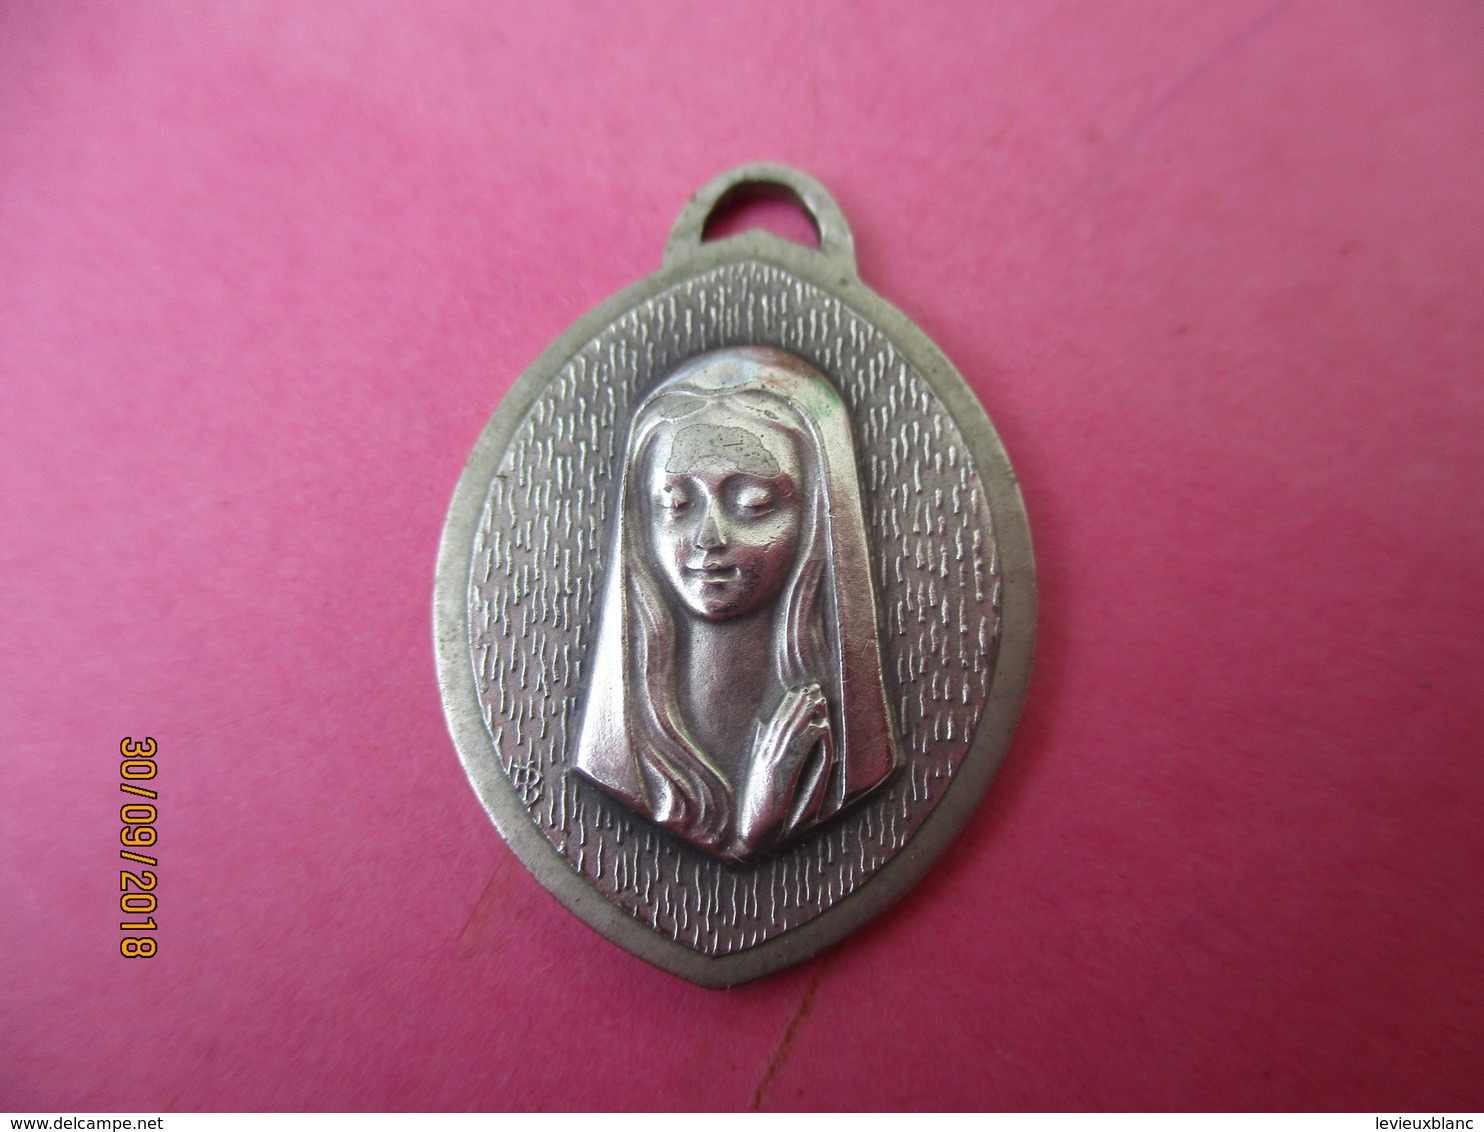 Médaille De Chaînette/Notre Dame De Lourdes / Vers 1960-1980   CAN793 - Religion & Esotericism